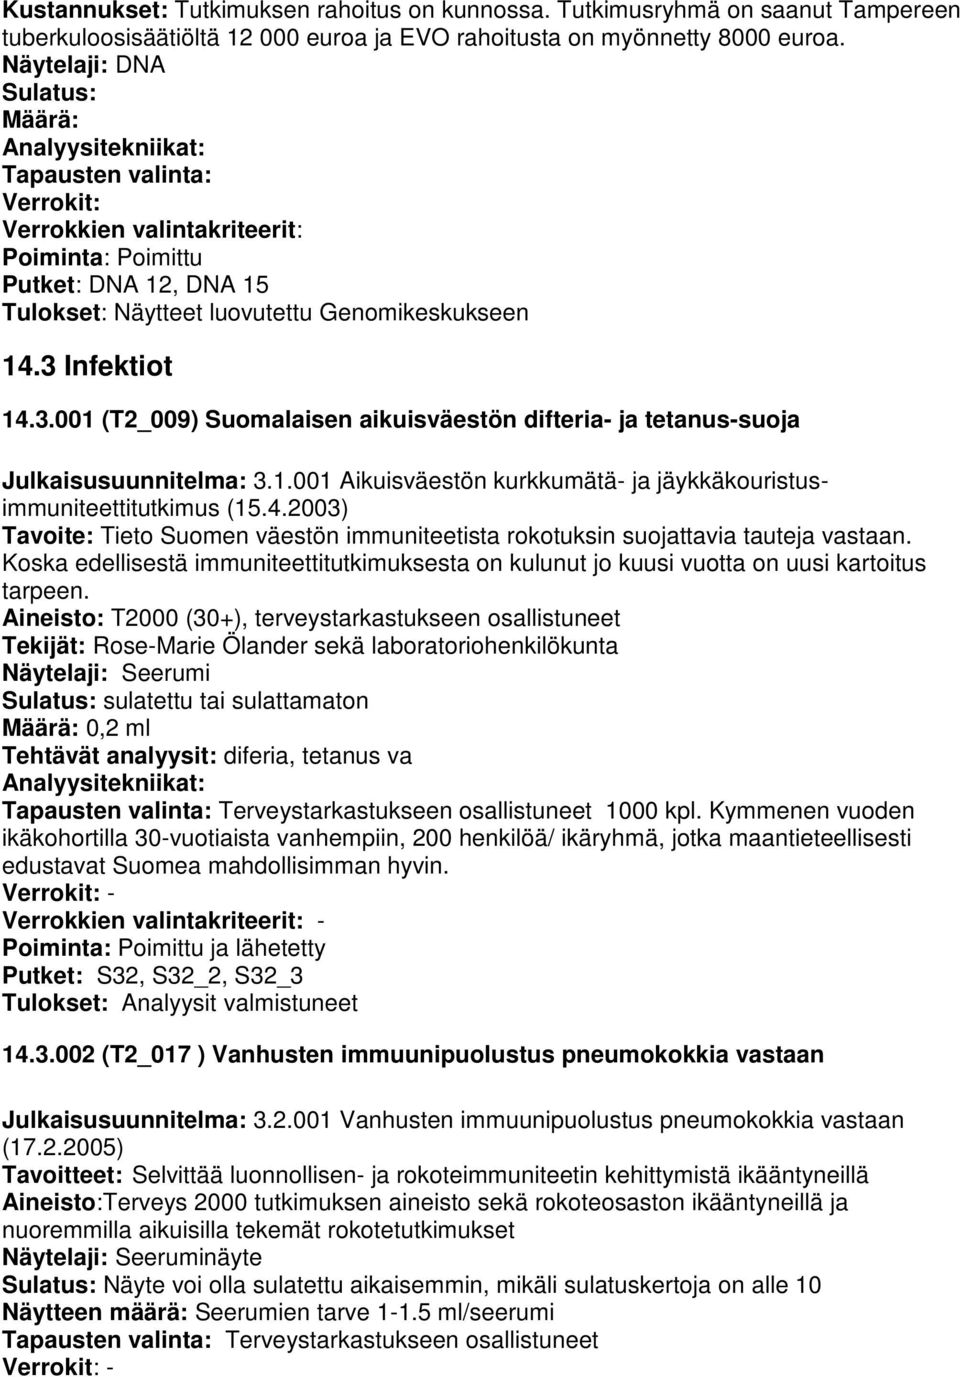 Infektiot 14.3.001 (T2_009) Suomalaisen aikuisväestön difteria- ja tetanus-suoja Julkaisusuunnitelma: 3.1.001 Aikuisväestön kurkkumätä- ja jäykkäkouristusimmuniteettitutkimus (15.4.2003) Tavoite: Tieto Suomen väestön immuniteetista rokotuksin suojattavia tauteja vastaan.